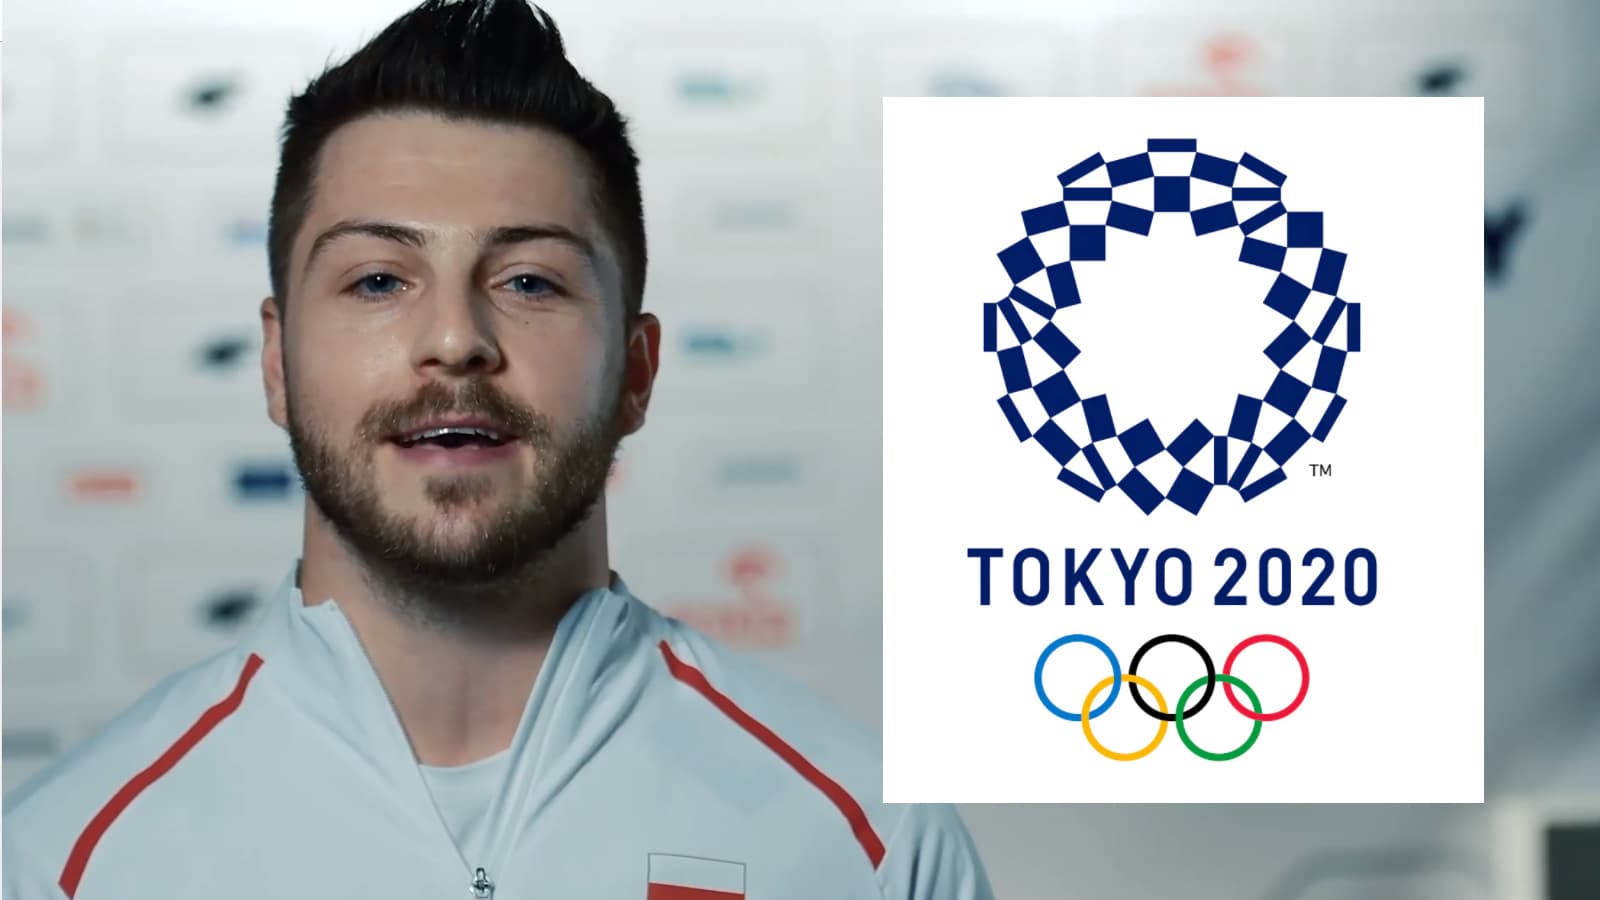 Igrzyska olimpijskie już za rogiem. Komu będziemy kibicować w Tokio?